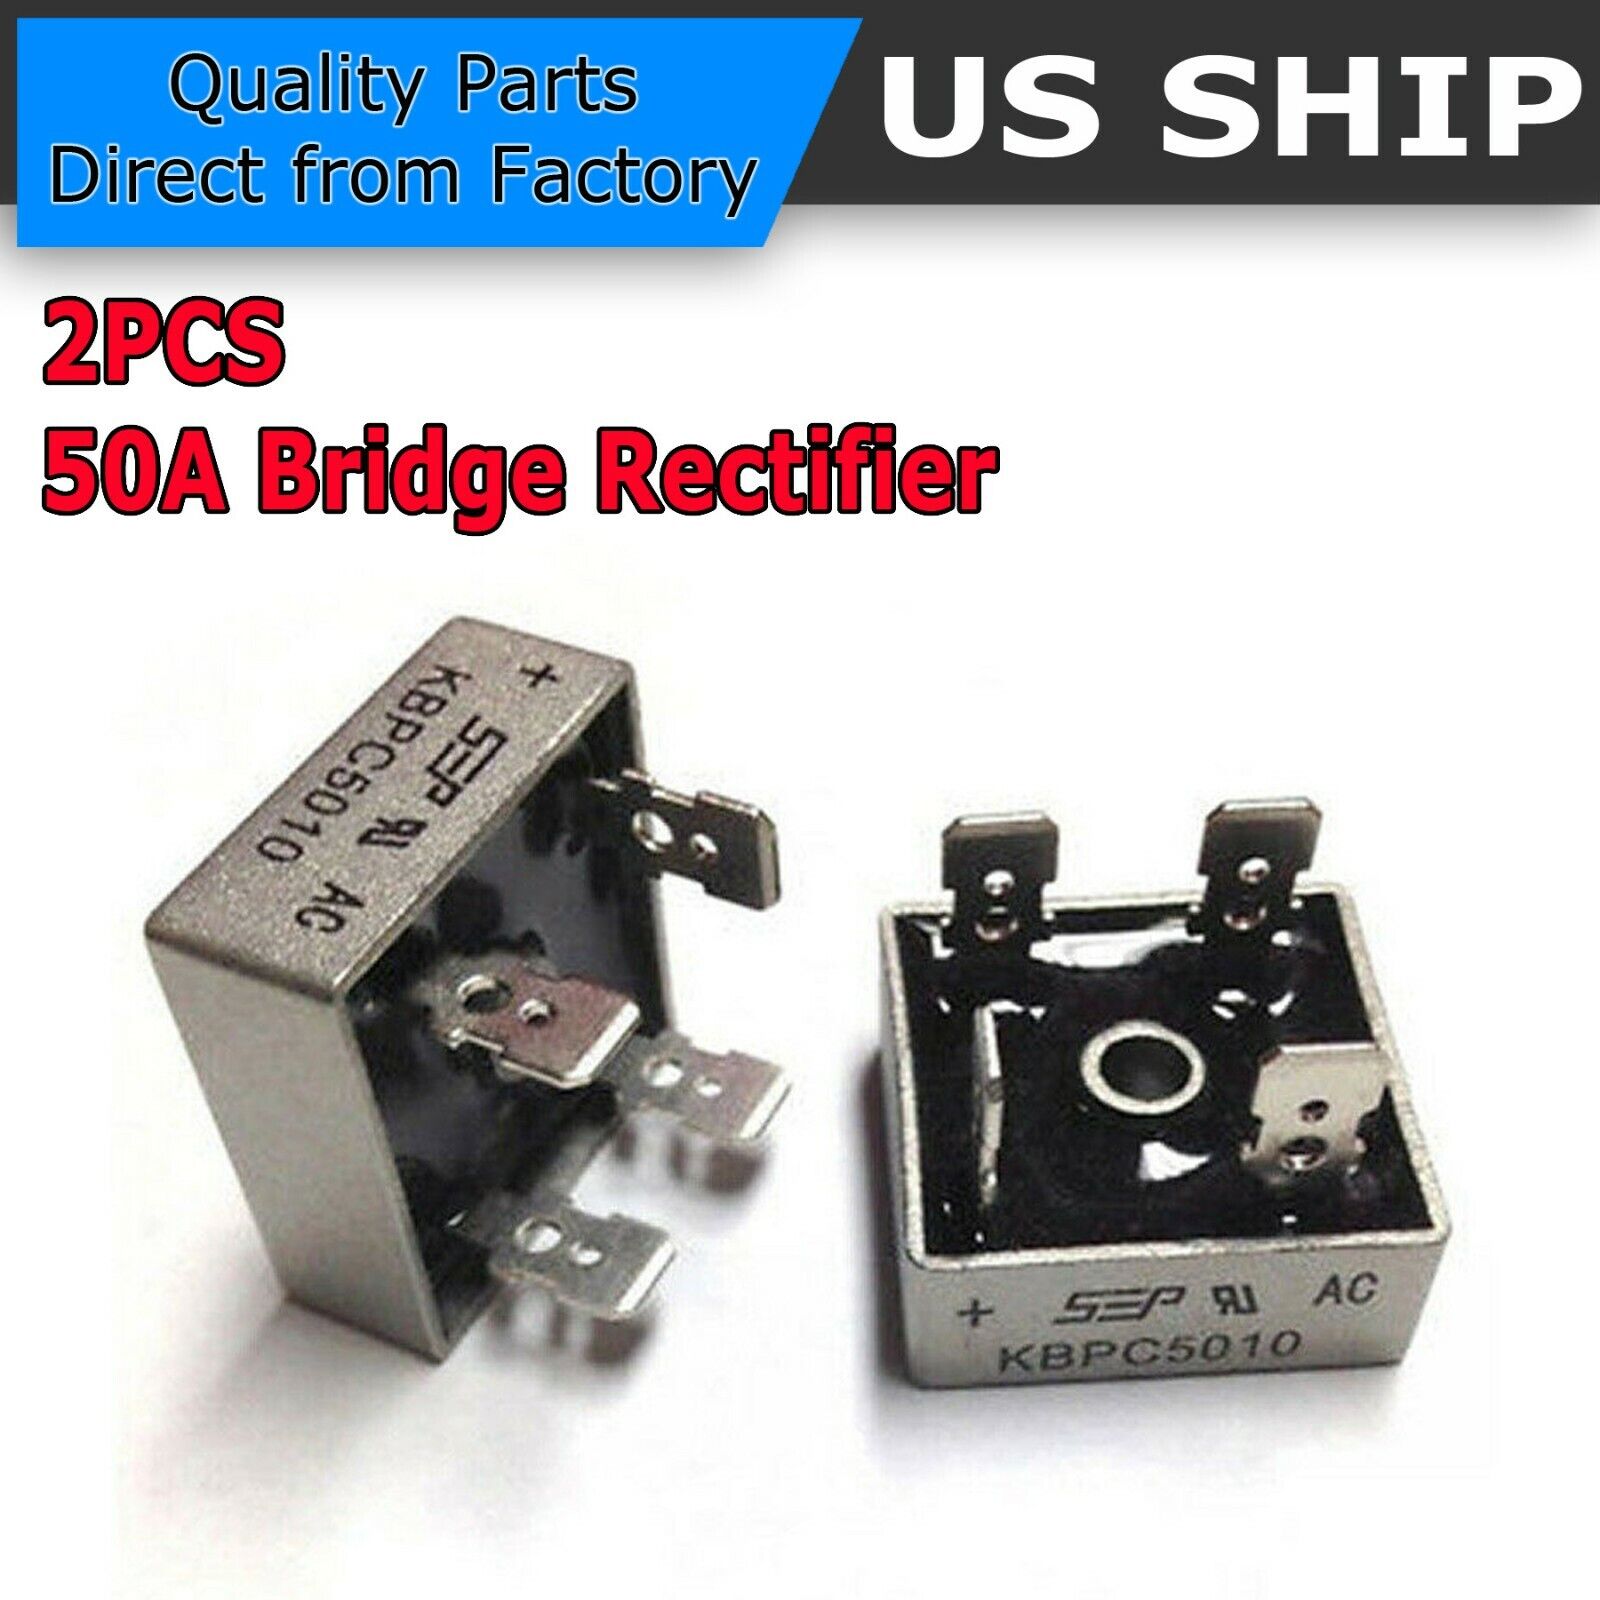 2Pcs 1000V 50A Metal Case Single Phase Diode Bridge Rectifier KBPC5010